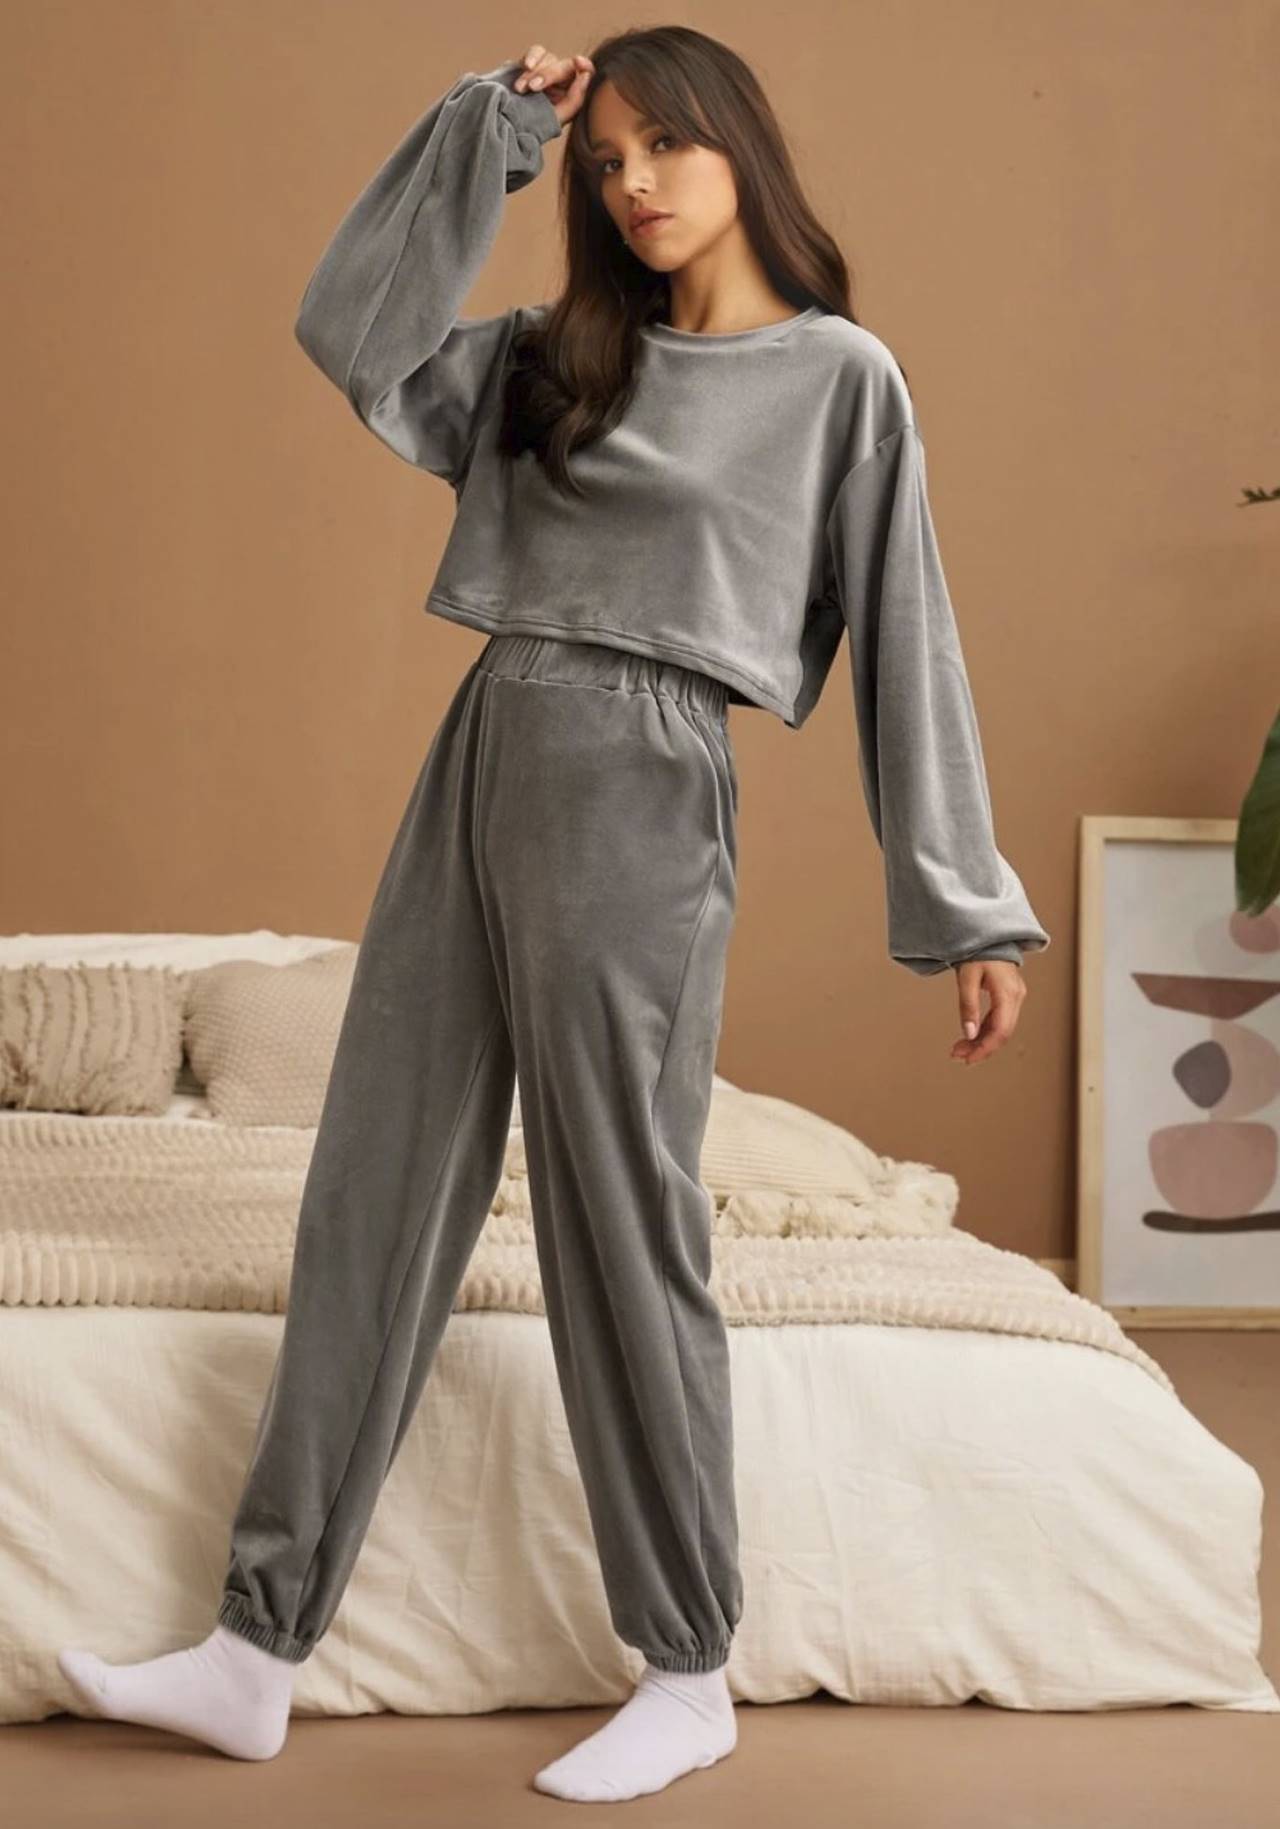 Pijamas, batas y ropa cómoda estar en casa y sentirte